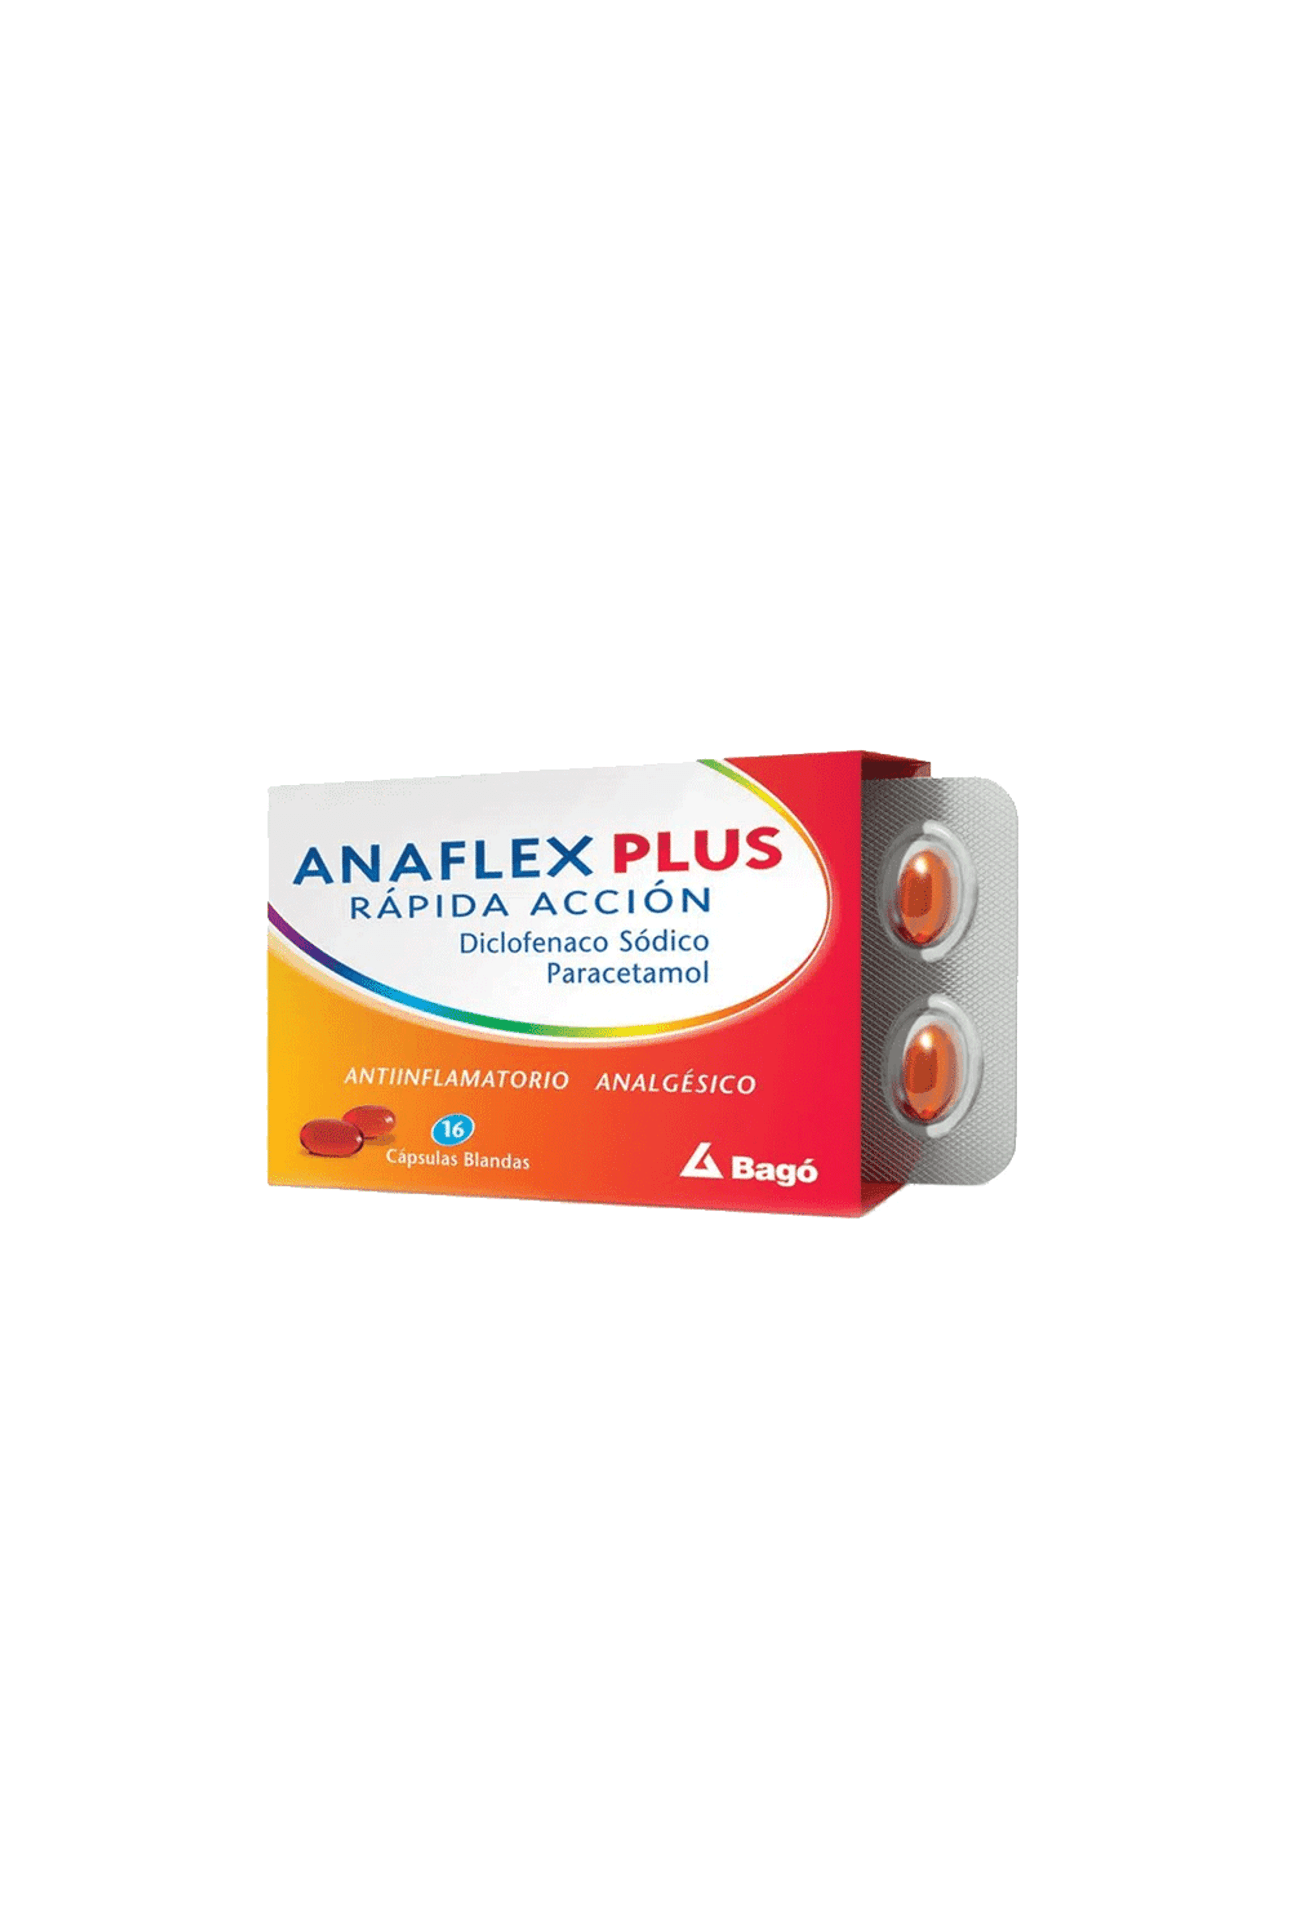 Anaflex-Plus-Rapida-Accion-x-16-Capsulas-Blandas-Anaflex